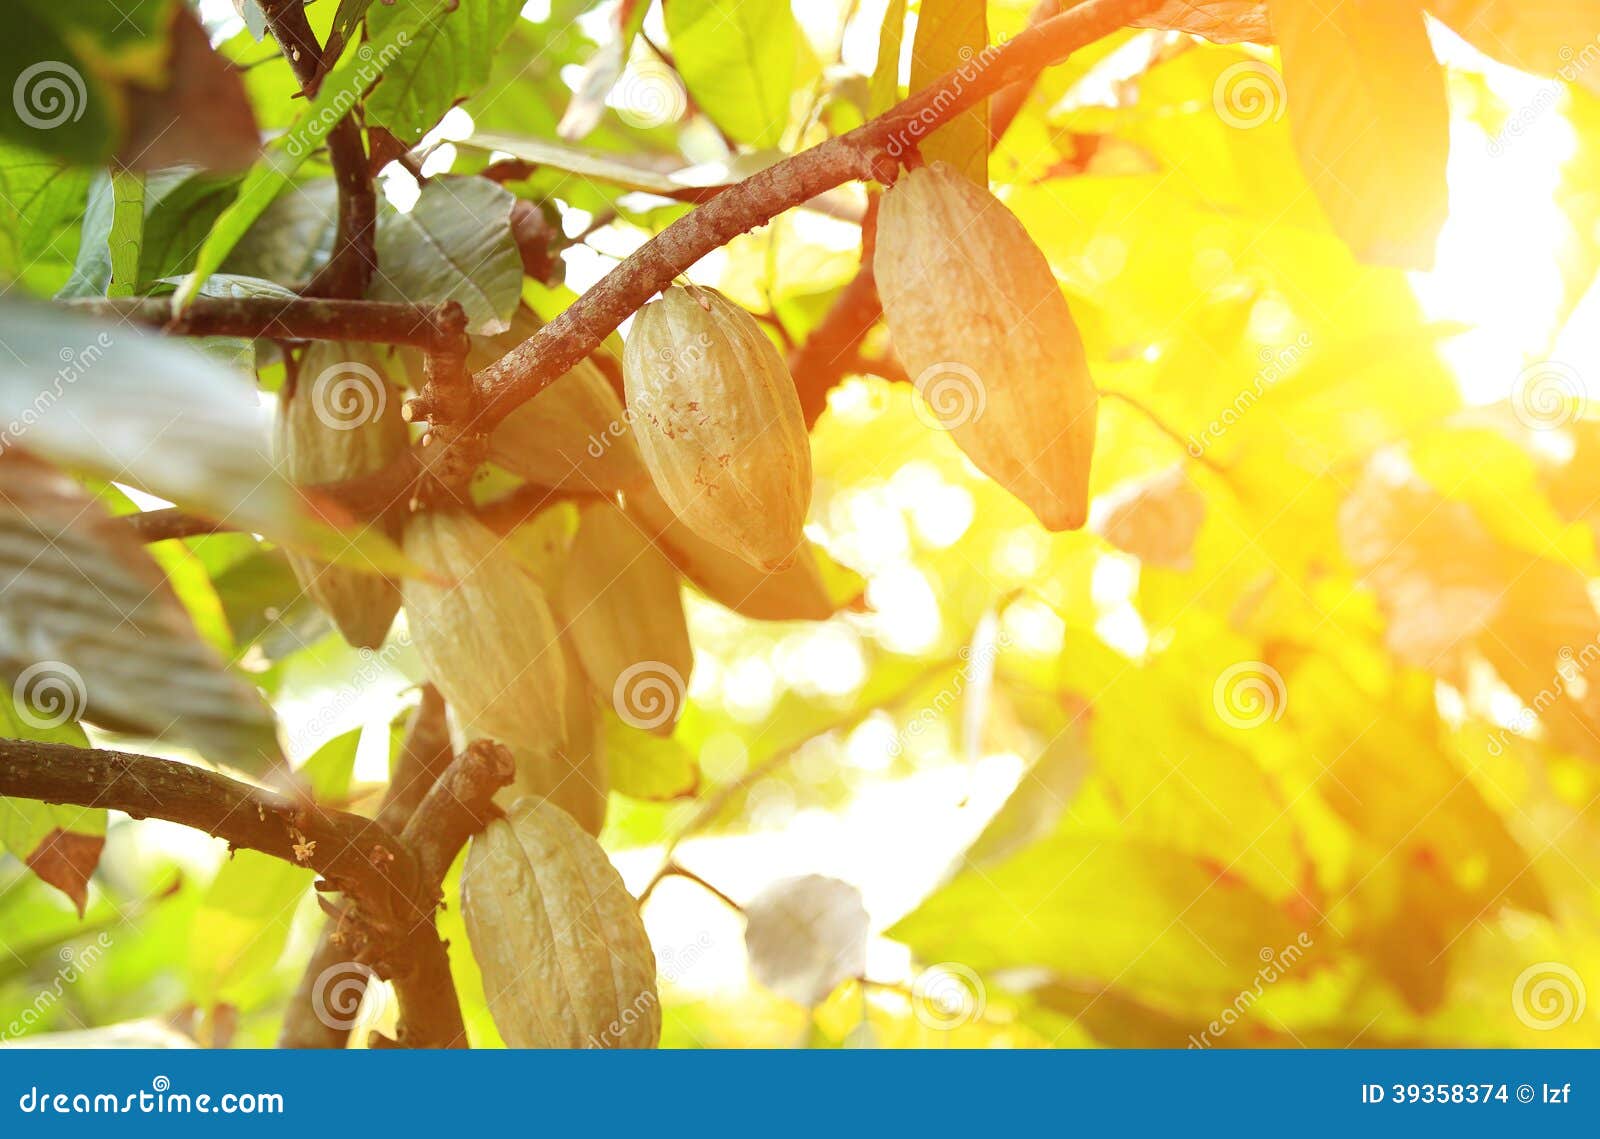 La frutta verde del cacao si sviluppa sull'albero